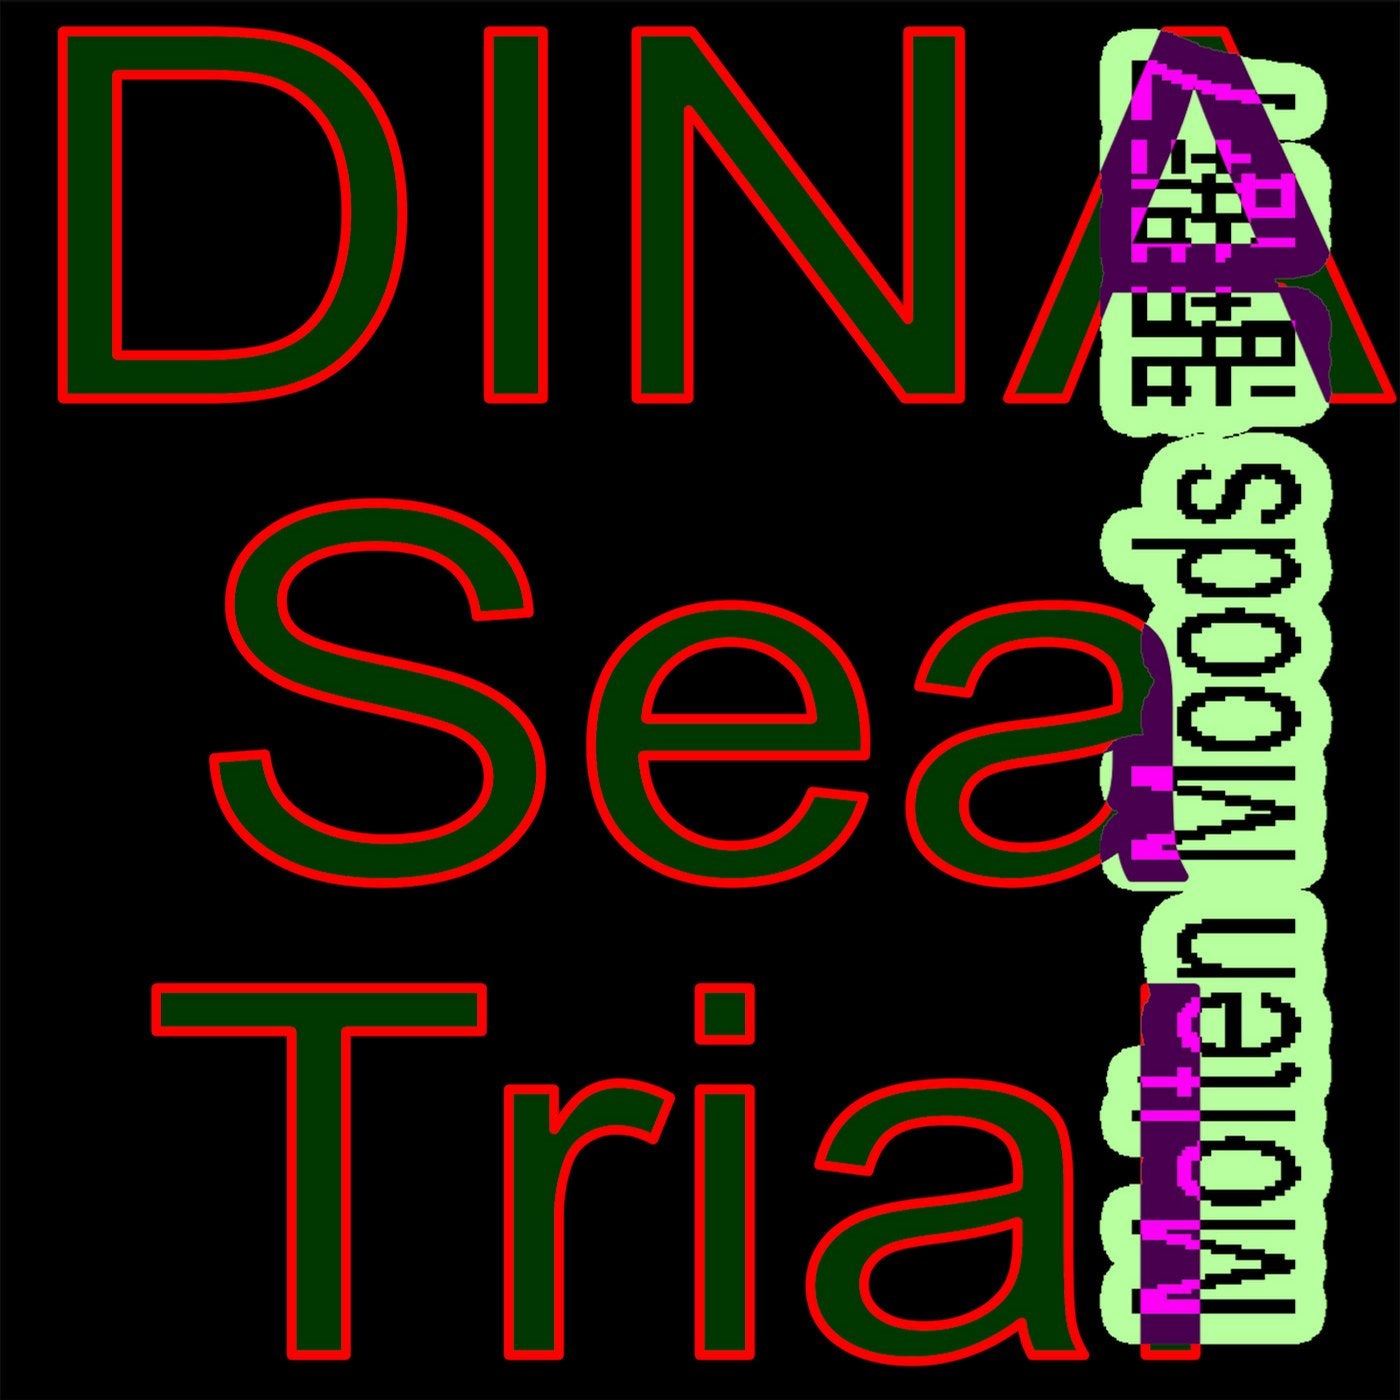 Sea Trial